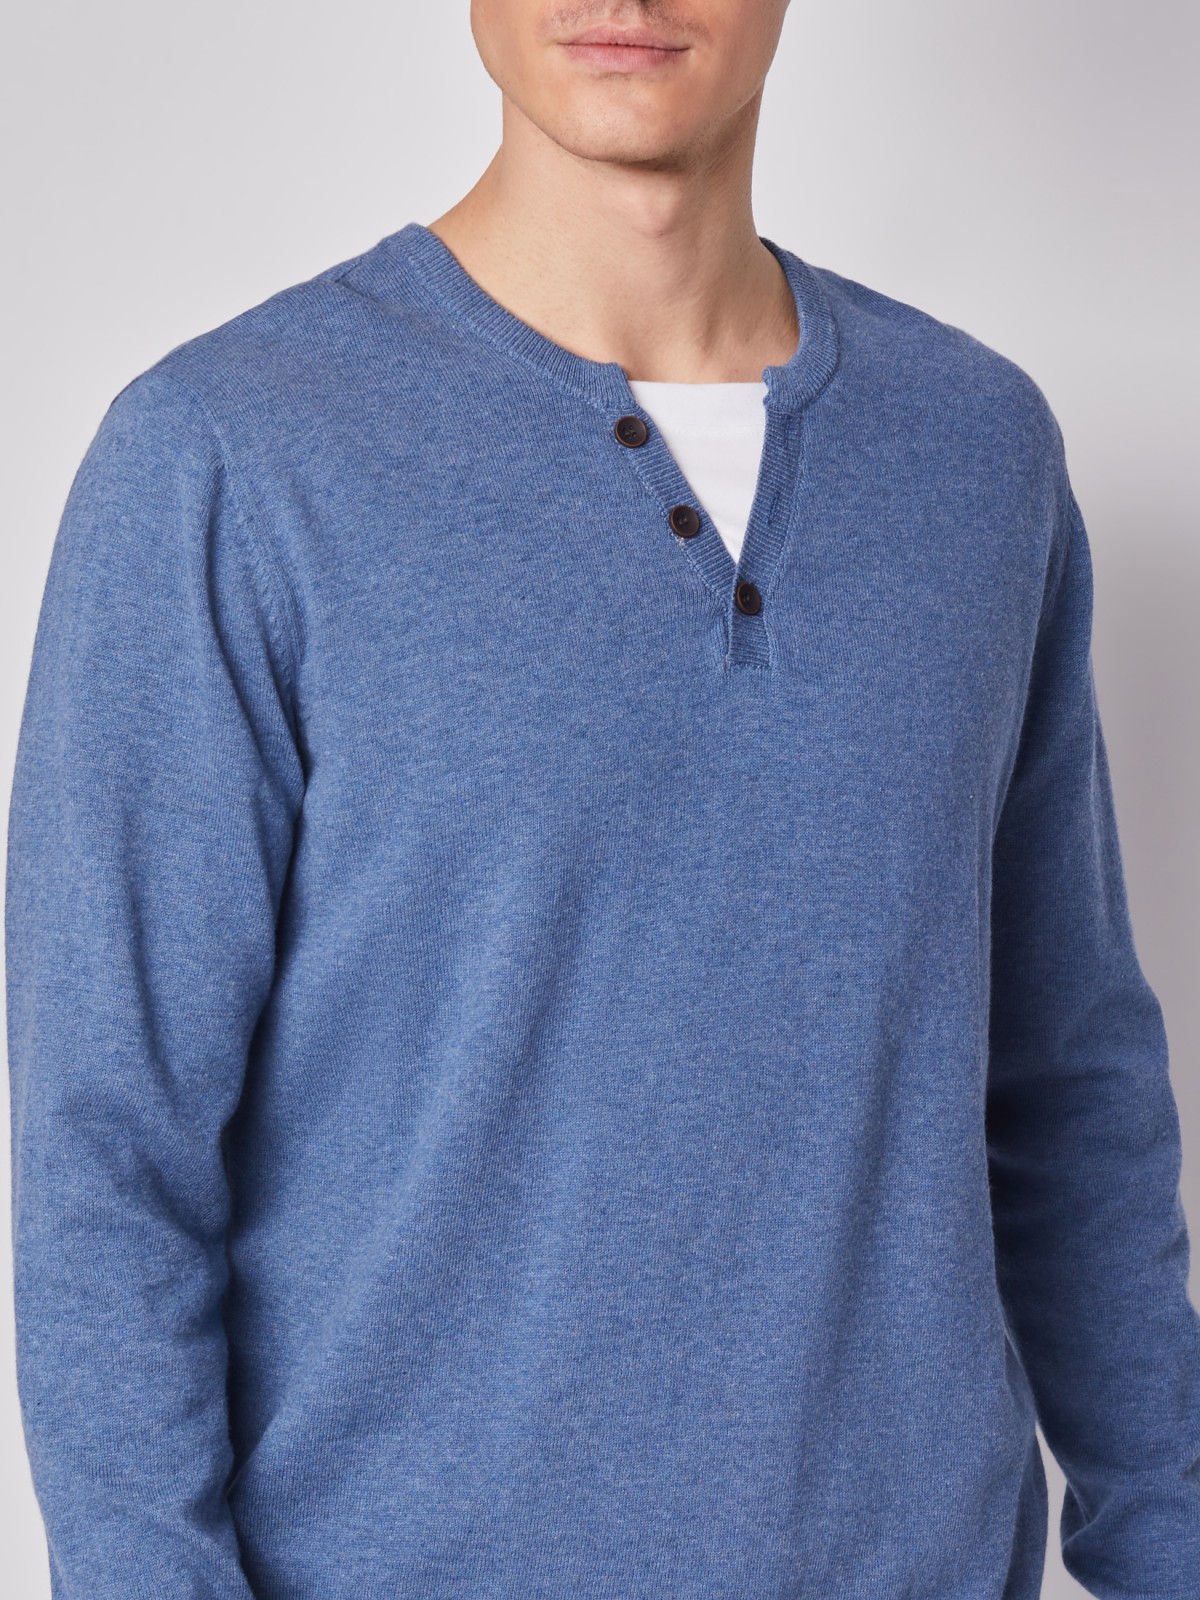 Комбинированный пуловер из хлопка zolla 212116765022, цвет голубой, размер M - фото 4